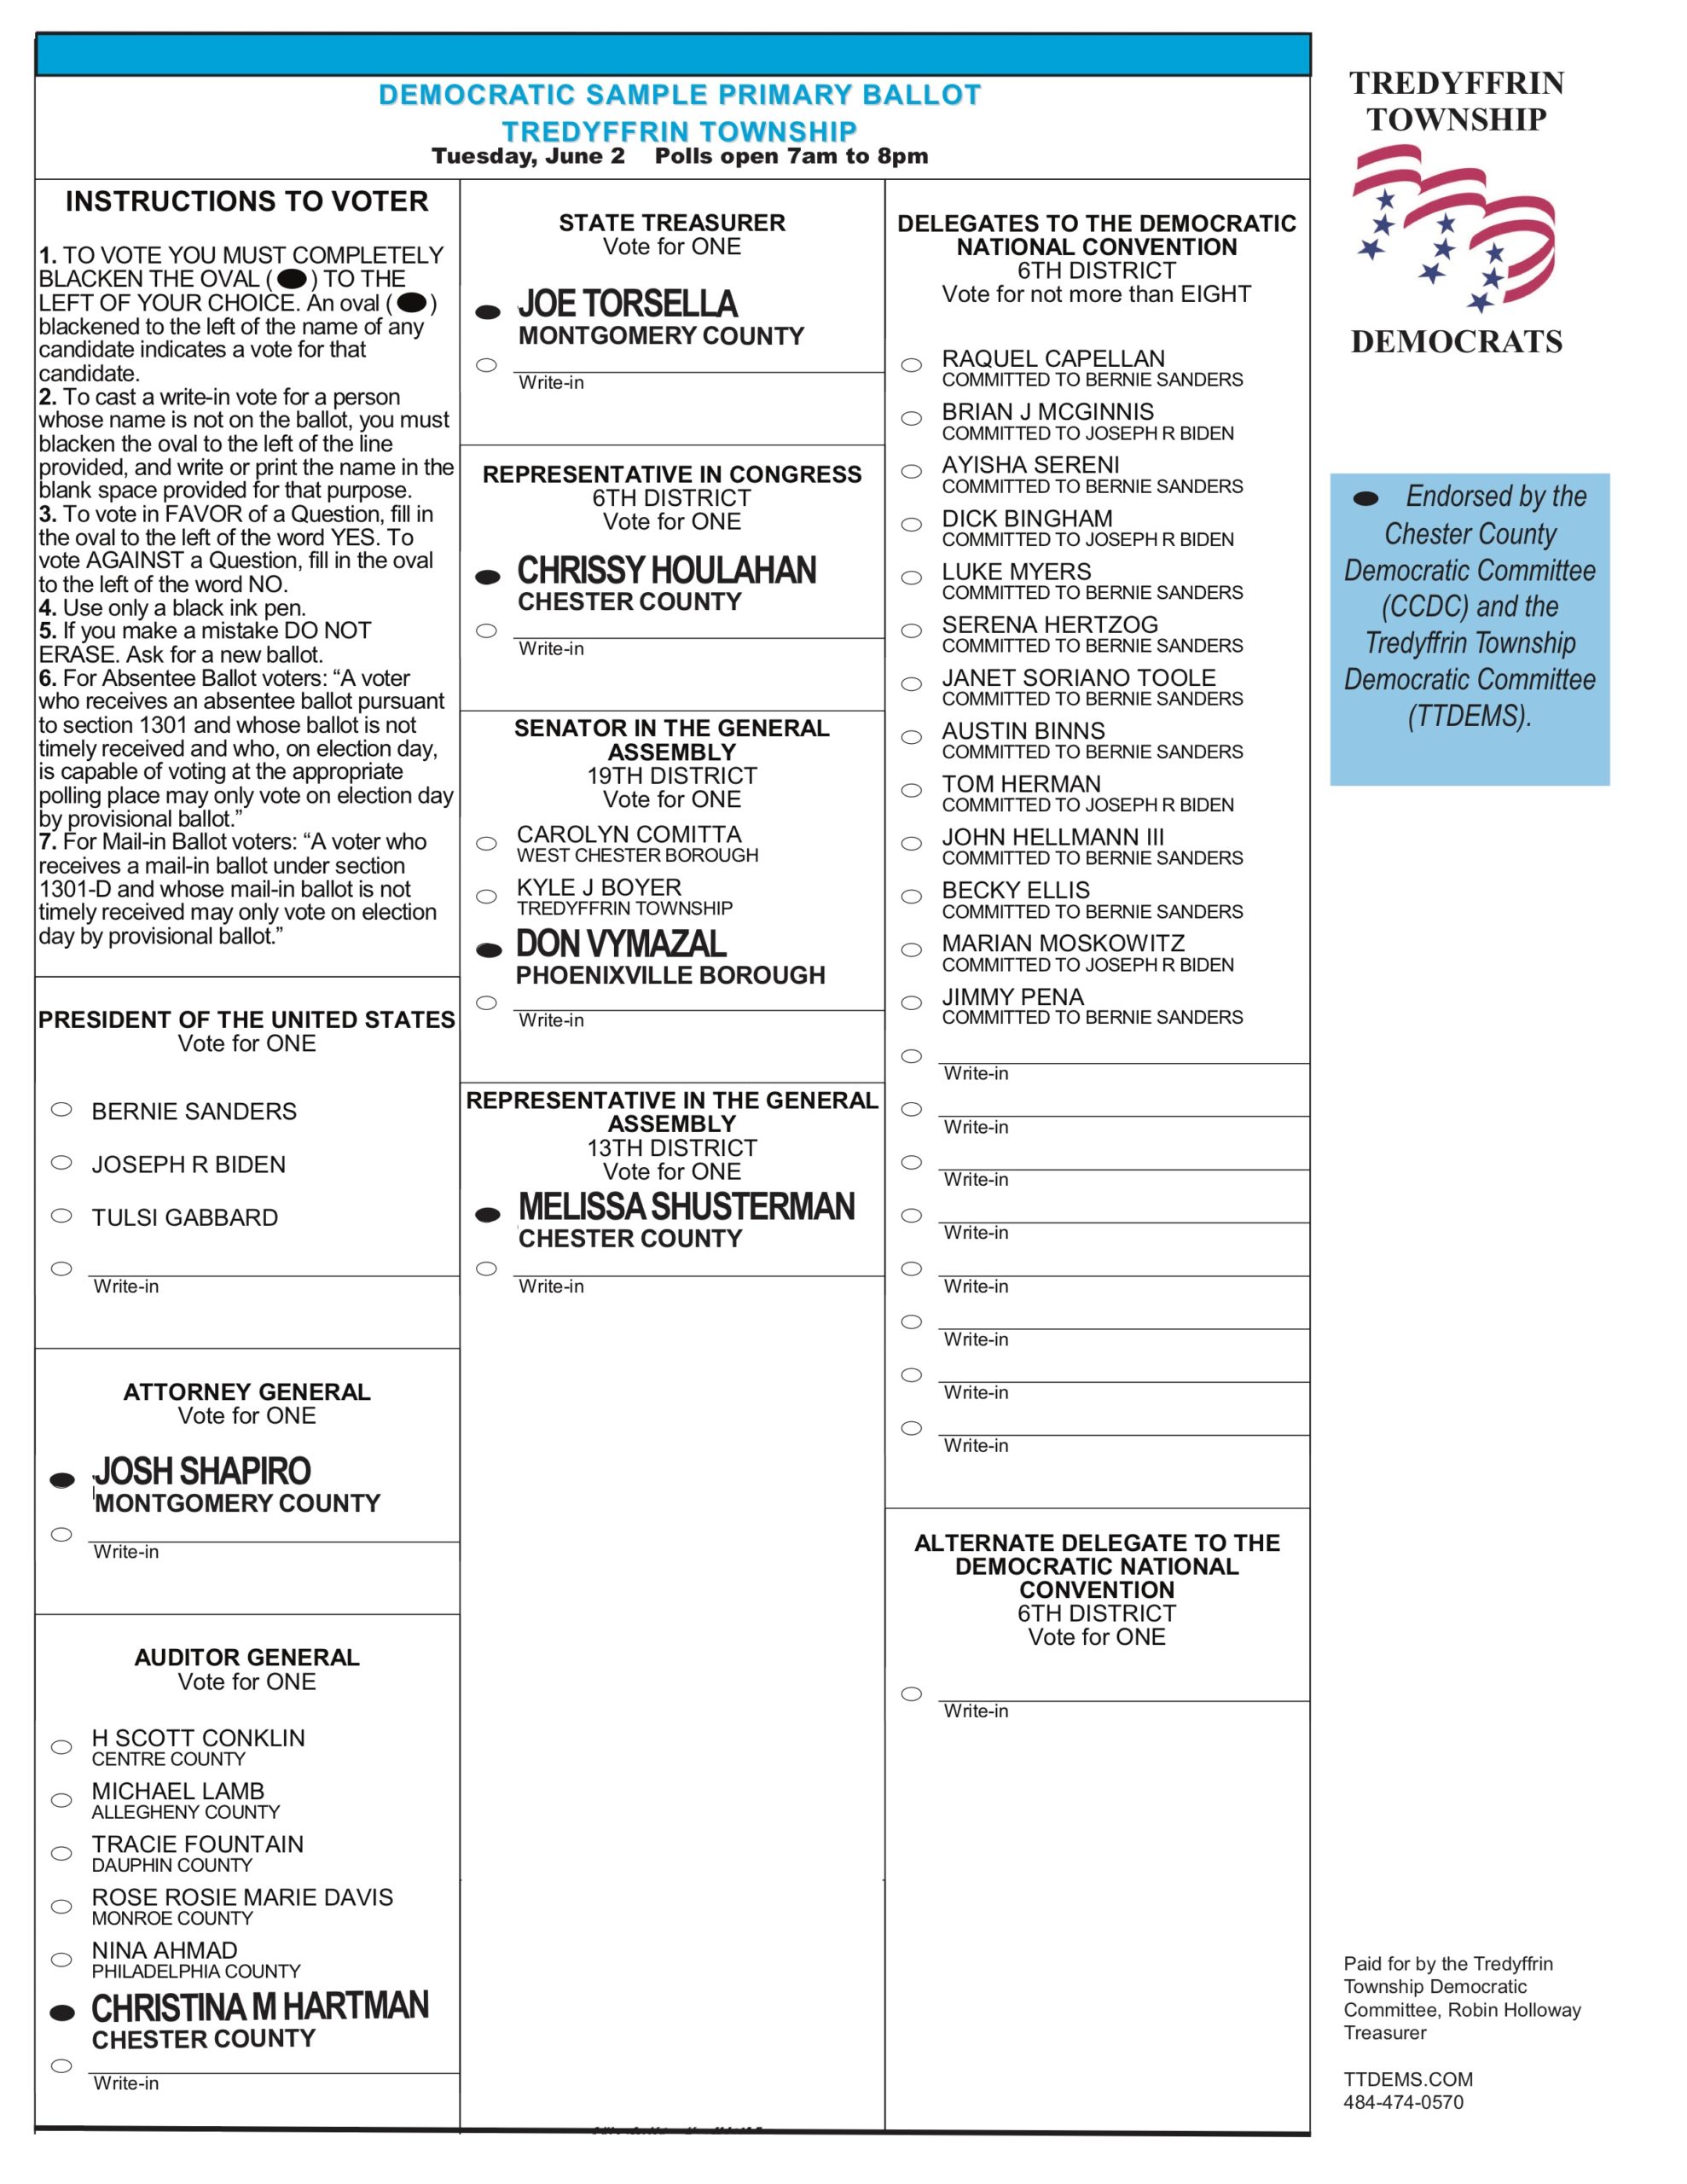 meridian township ballot 2018